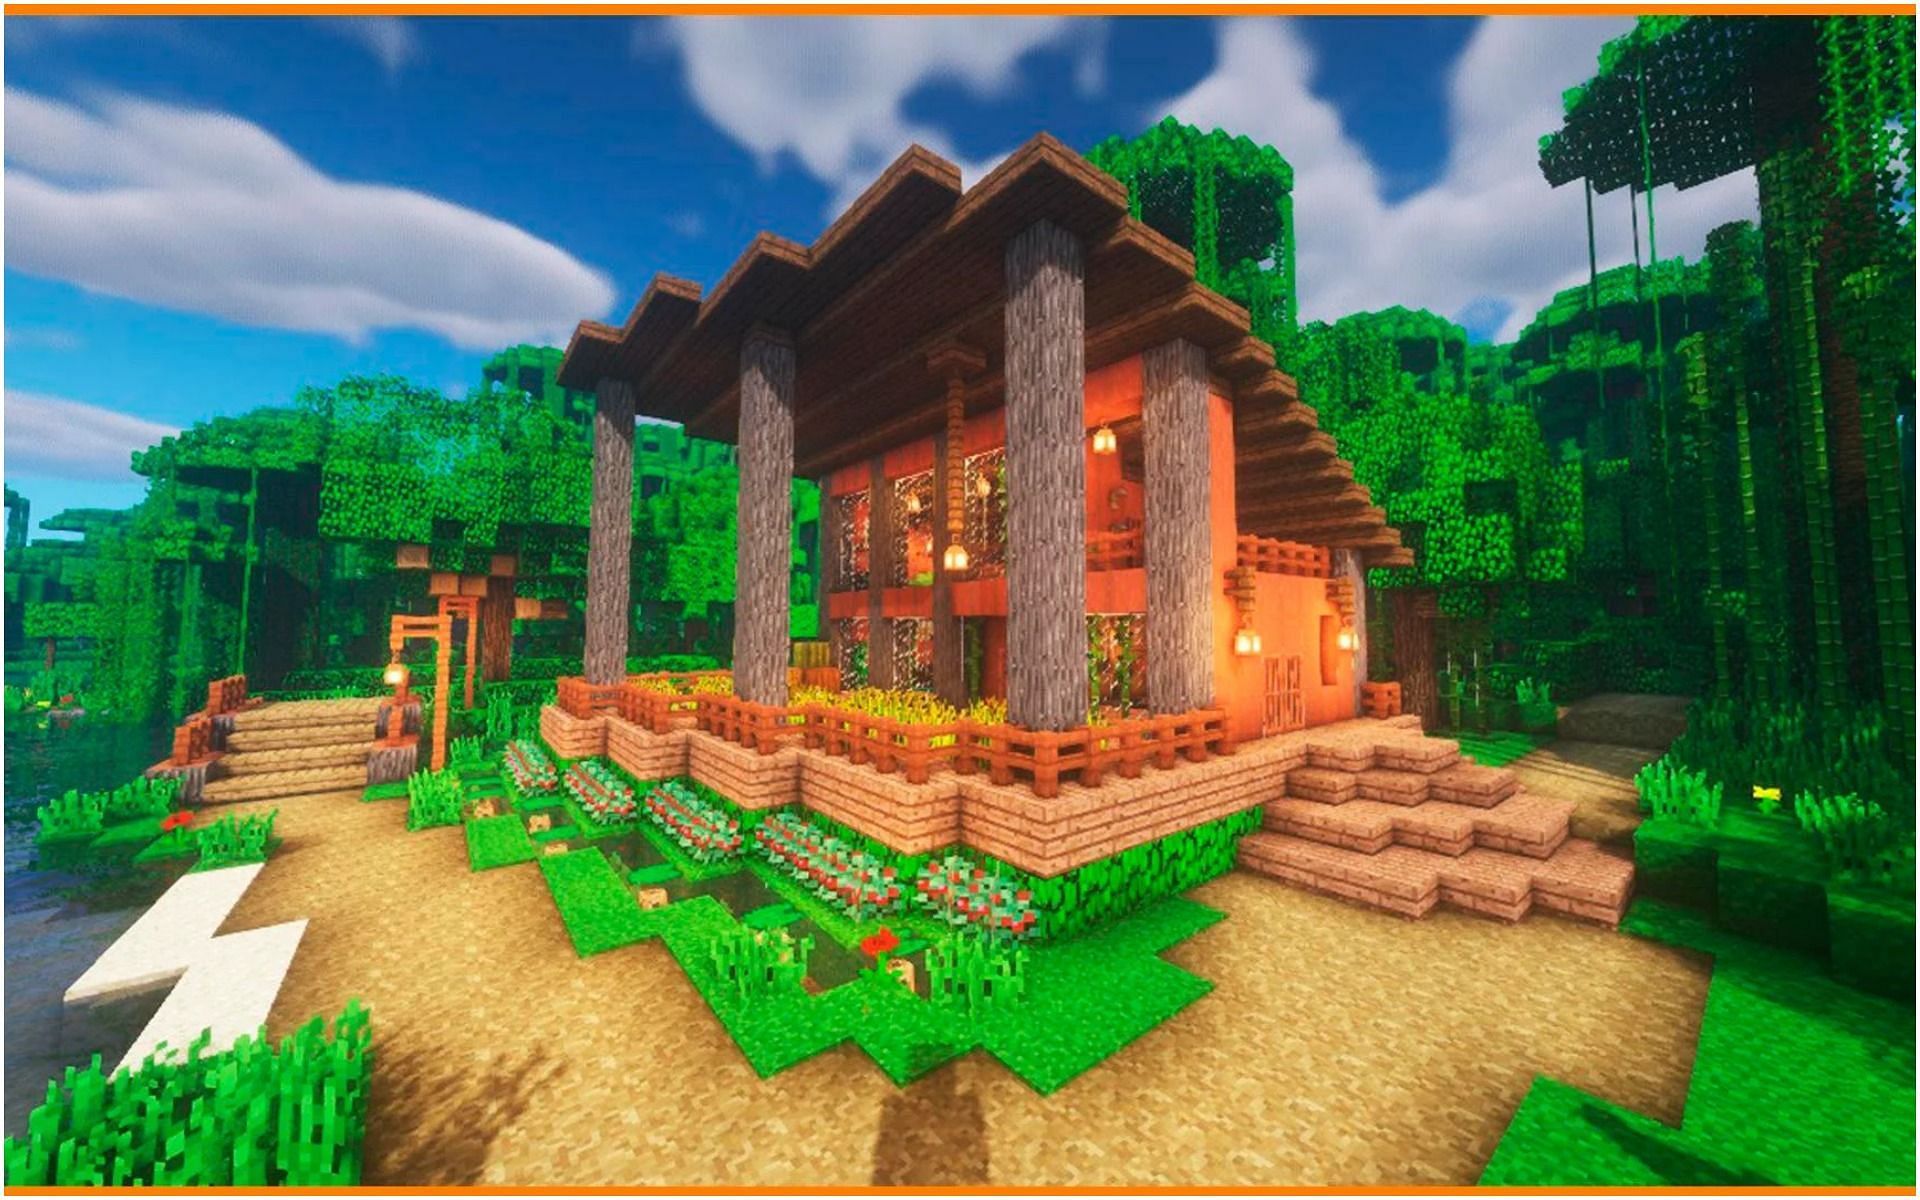 A jungle house (Image via Reddit/u/Steve_builder)